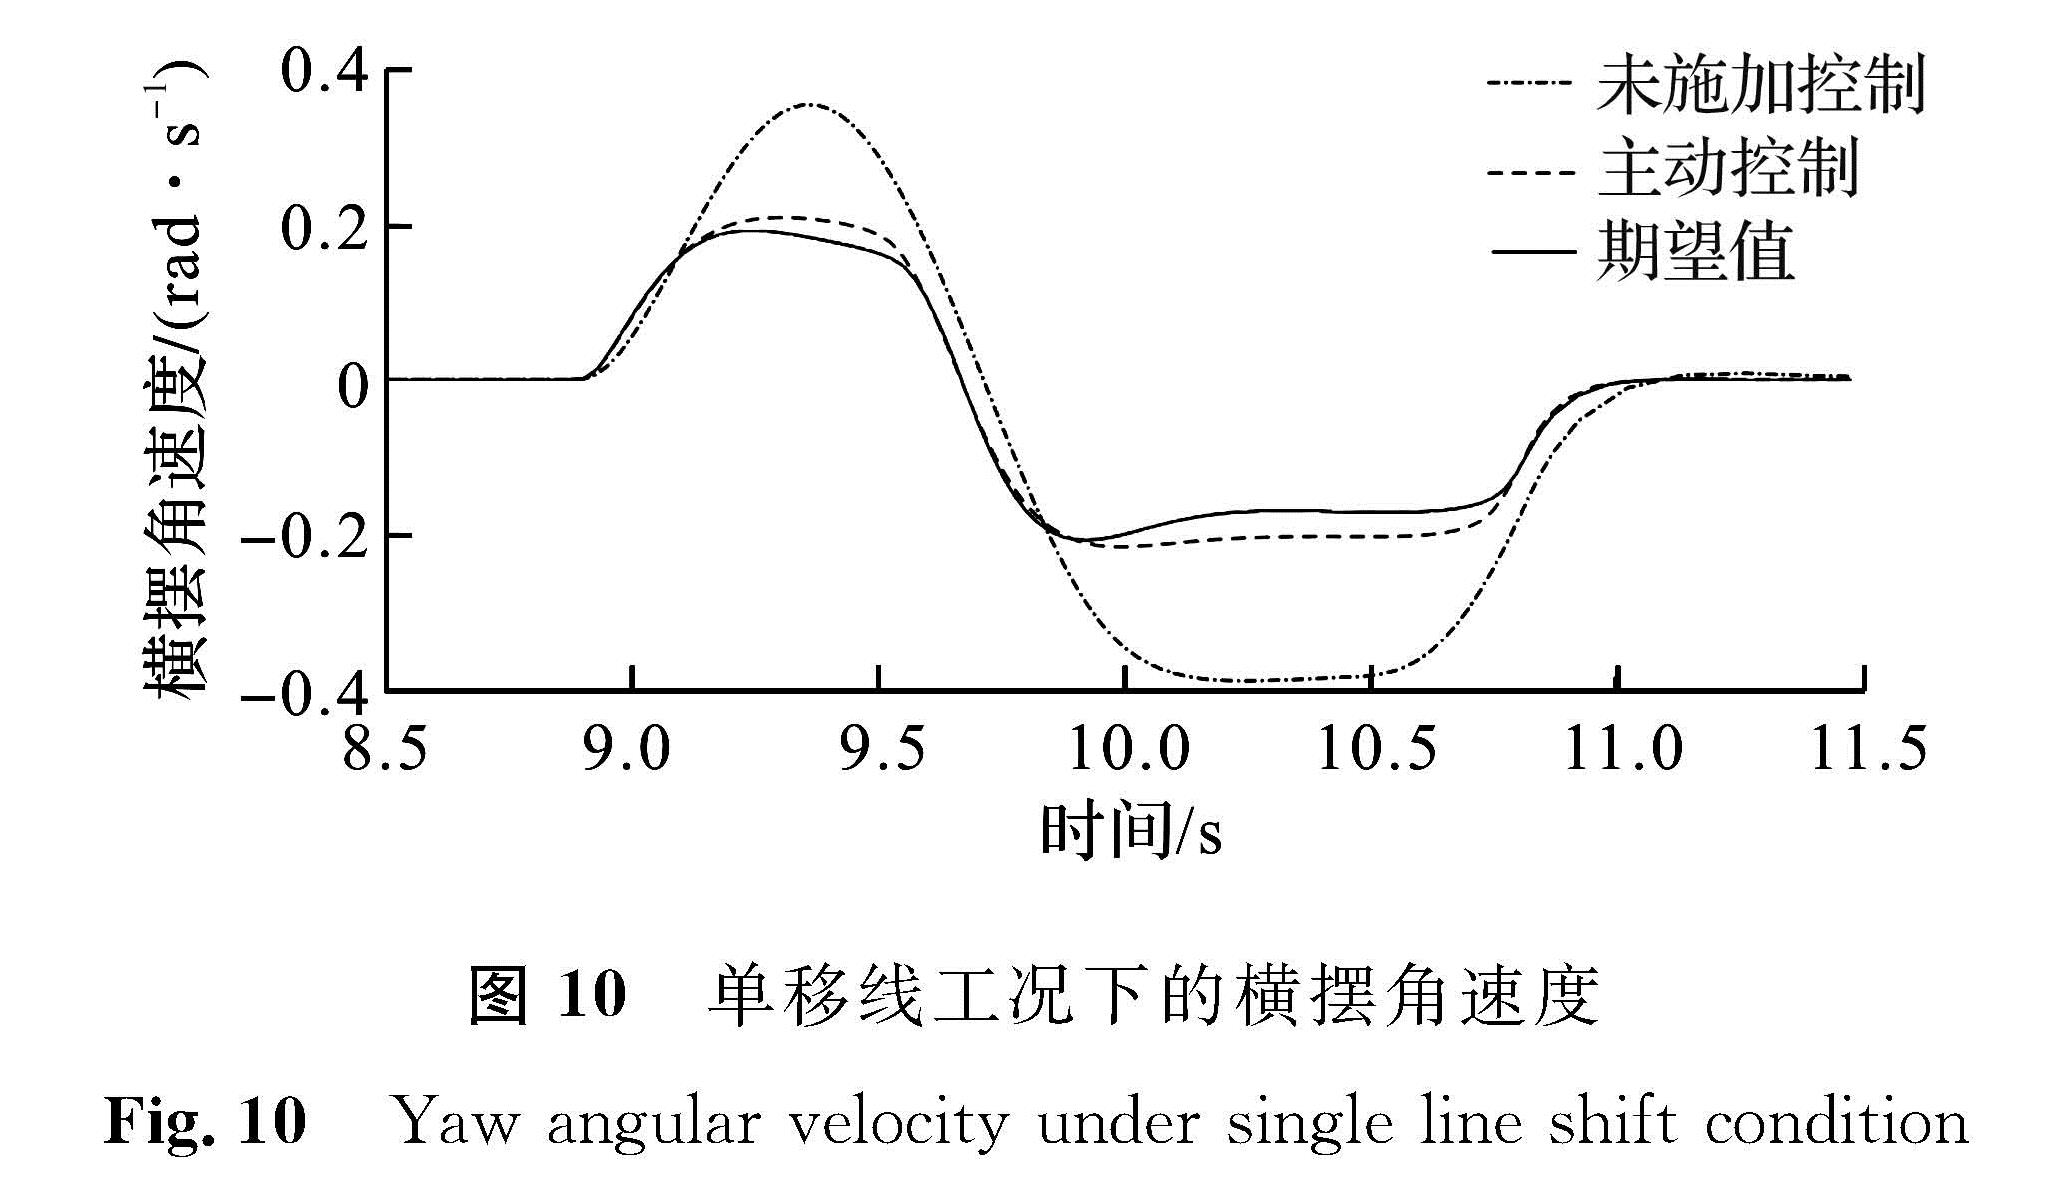 图 10 单移线工况下的横摆角速度<br/>Fig.10 Yaw angular velocity under single line shift condition